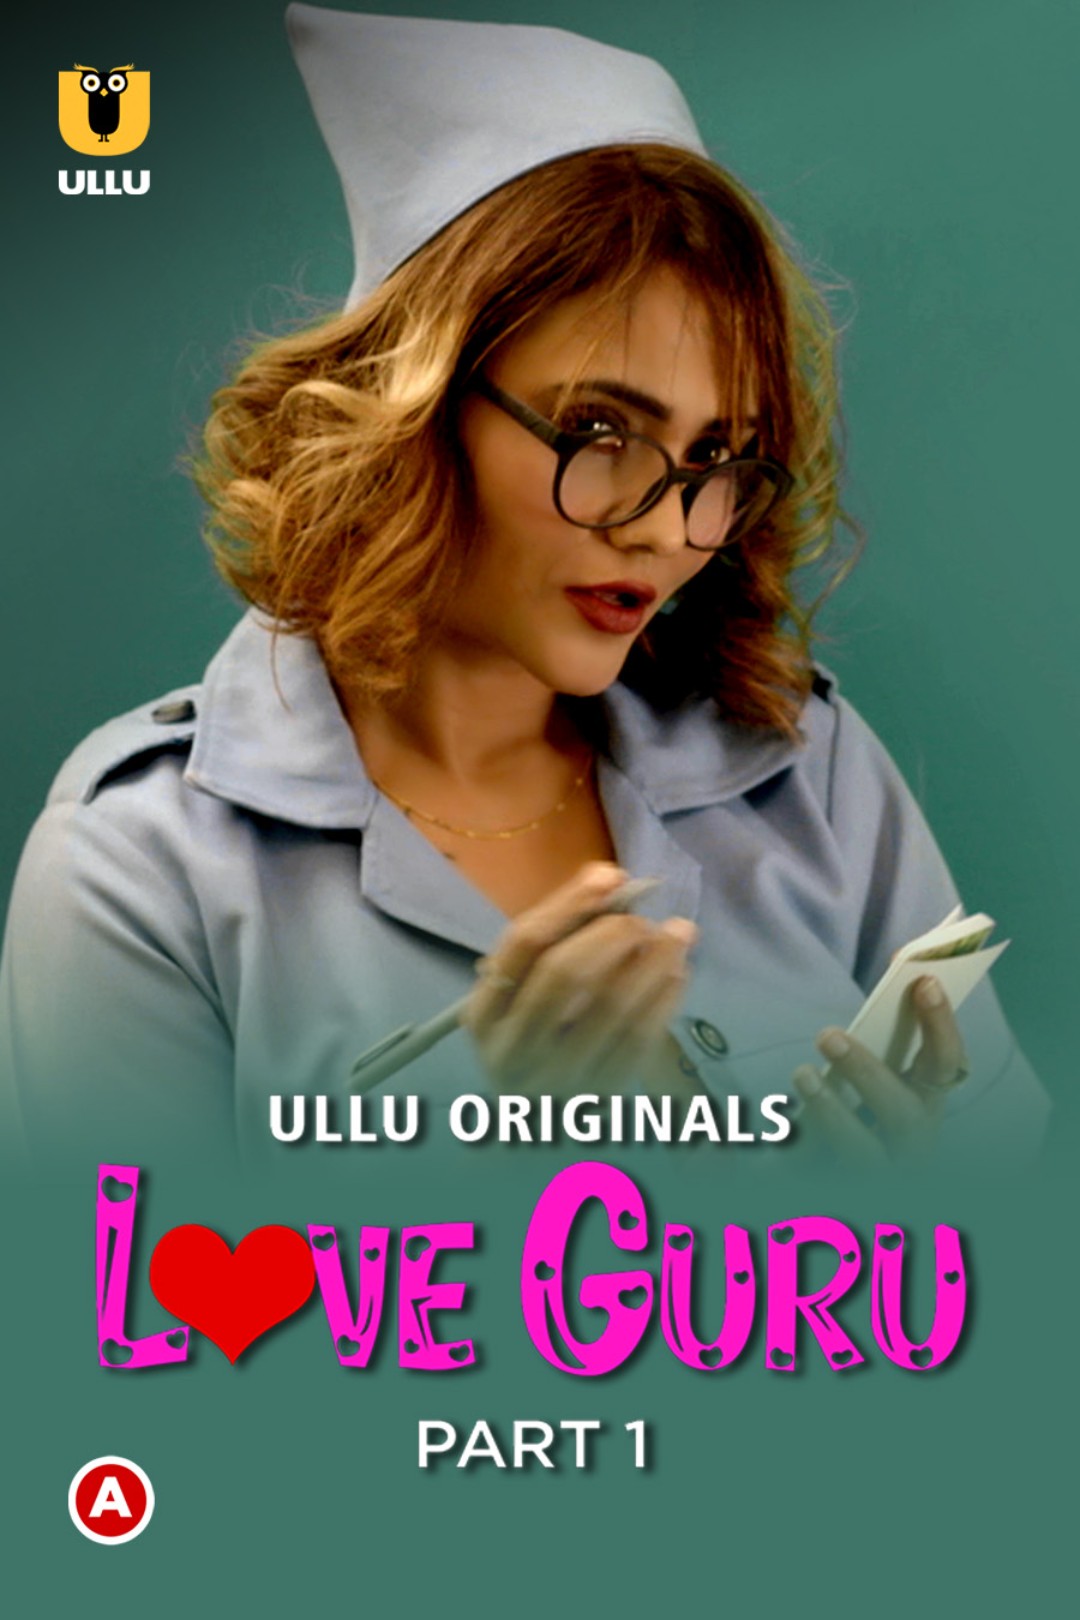 Download [18+] Love Guru (Season 1) (2022) Hindi ULLU Originals WEB Series 480p | 720p | 1080p